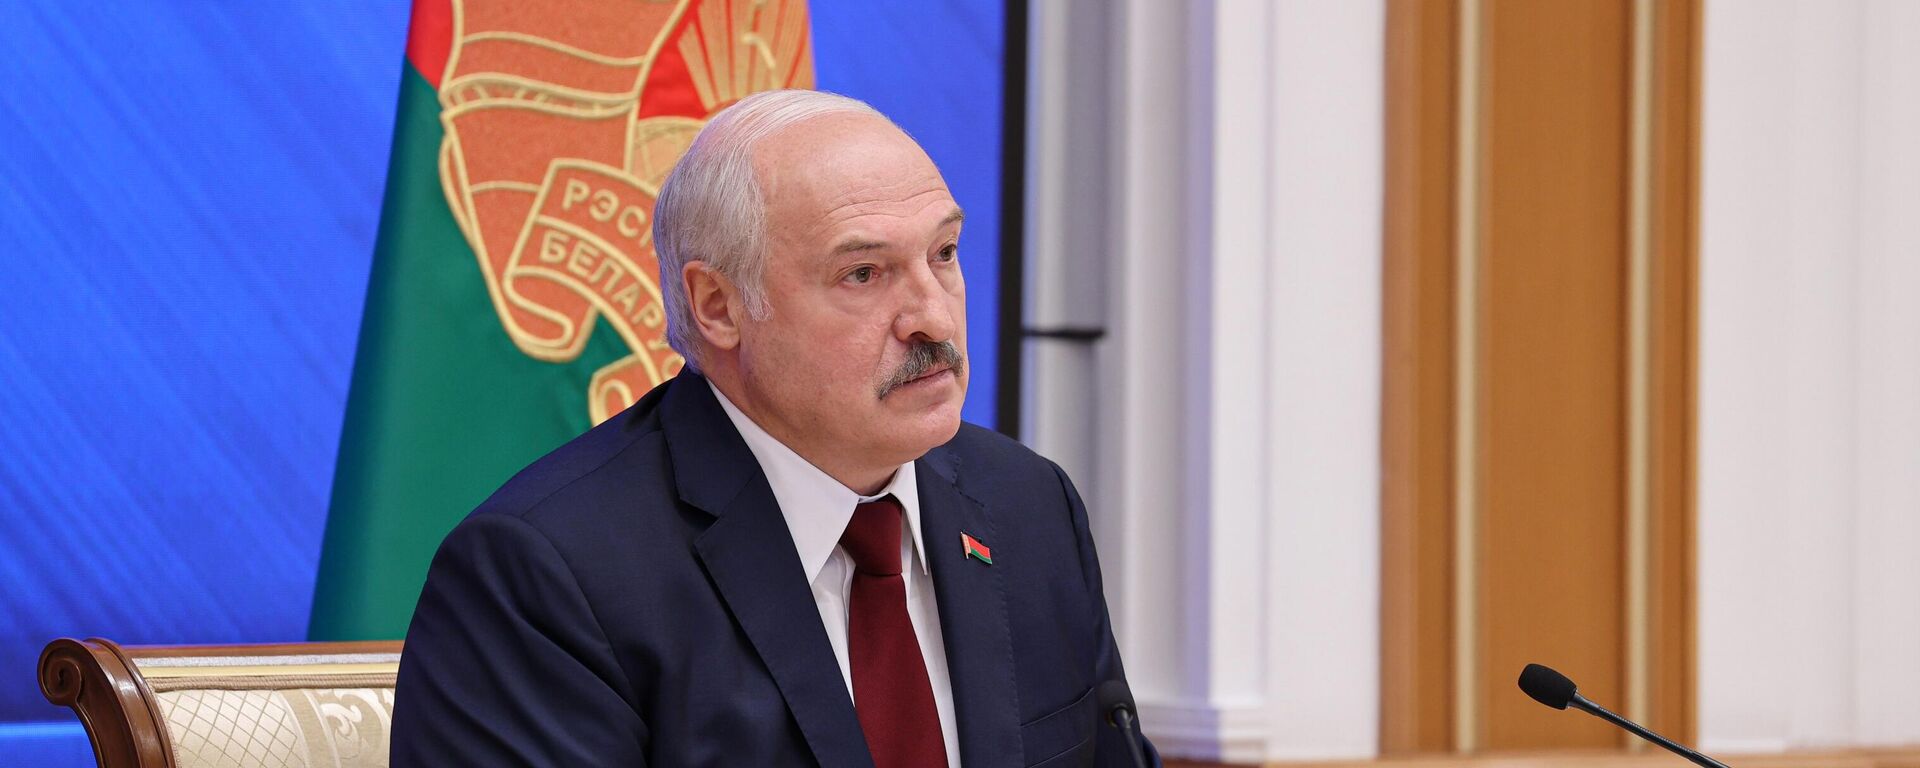 Predsednik Belorusije Aleksandar Lukašenko - Sputnik Srbija, 1920, 23.08.2021